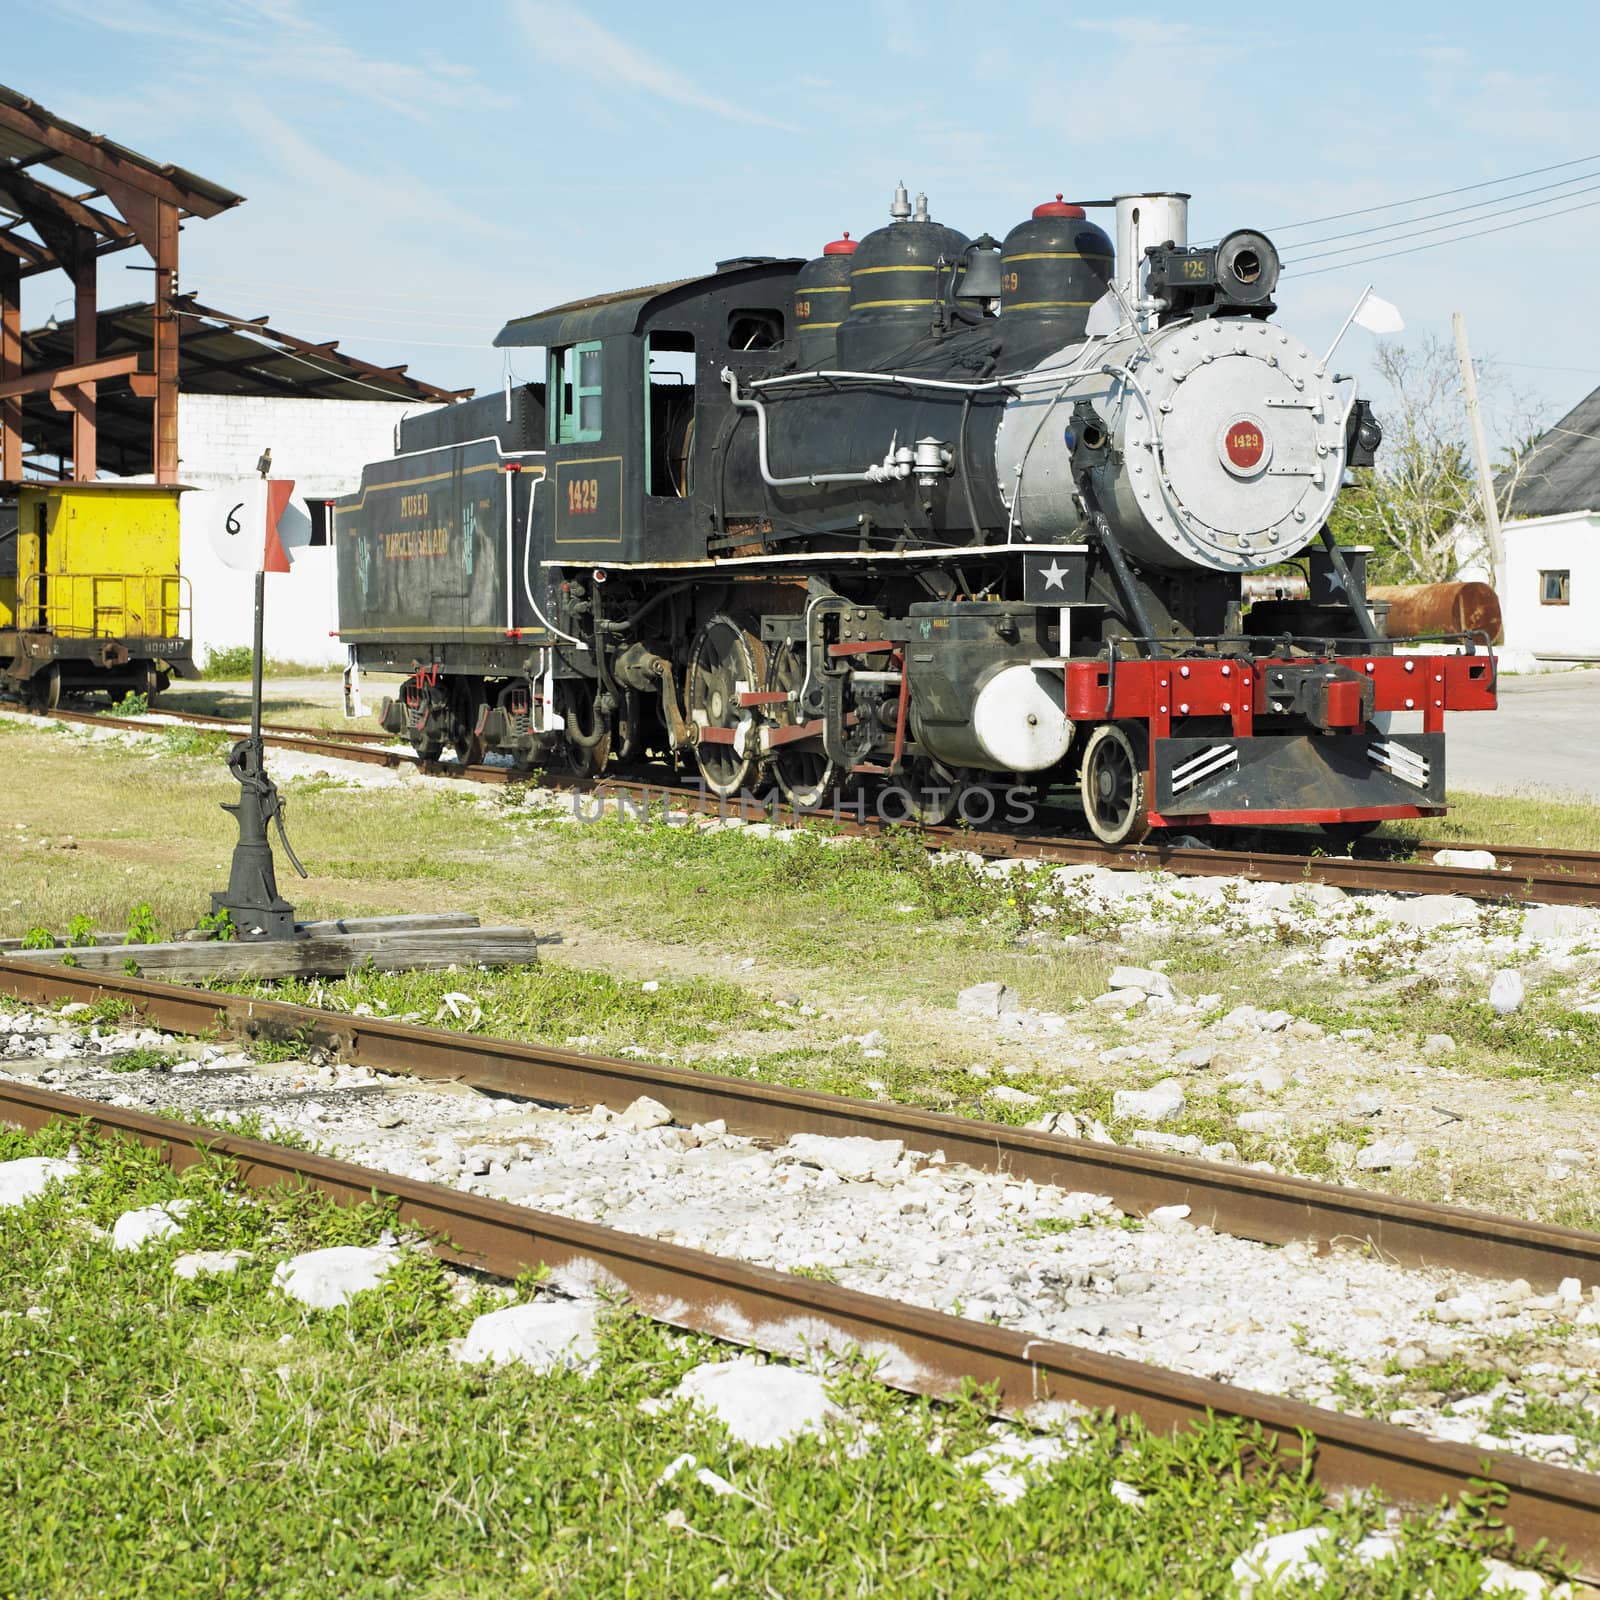 railway museum, Marcelo Salado, Villa Clara Province, Cuba